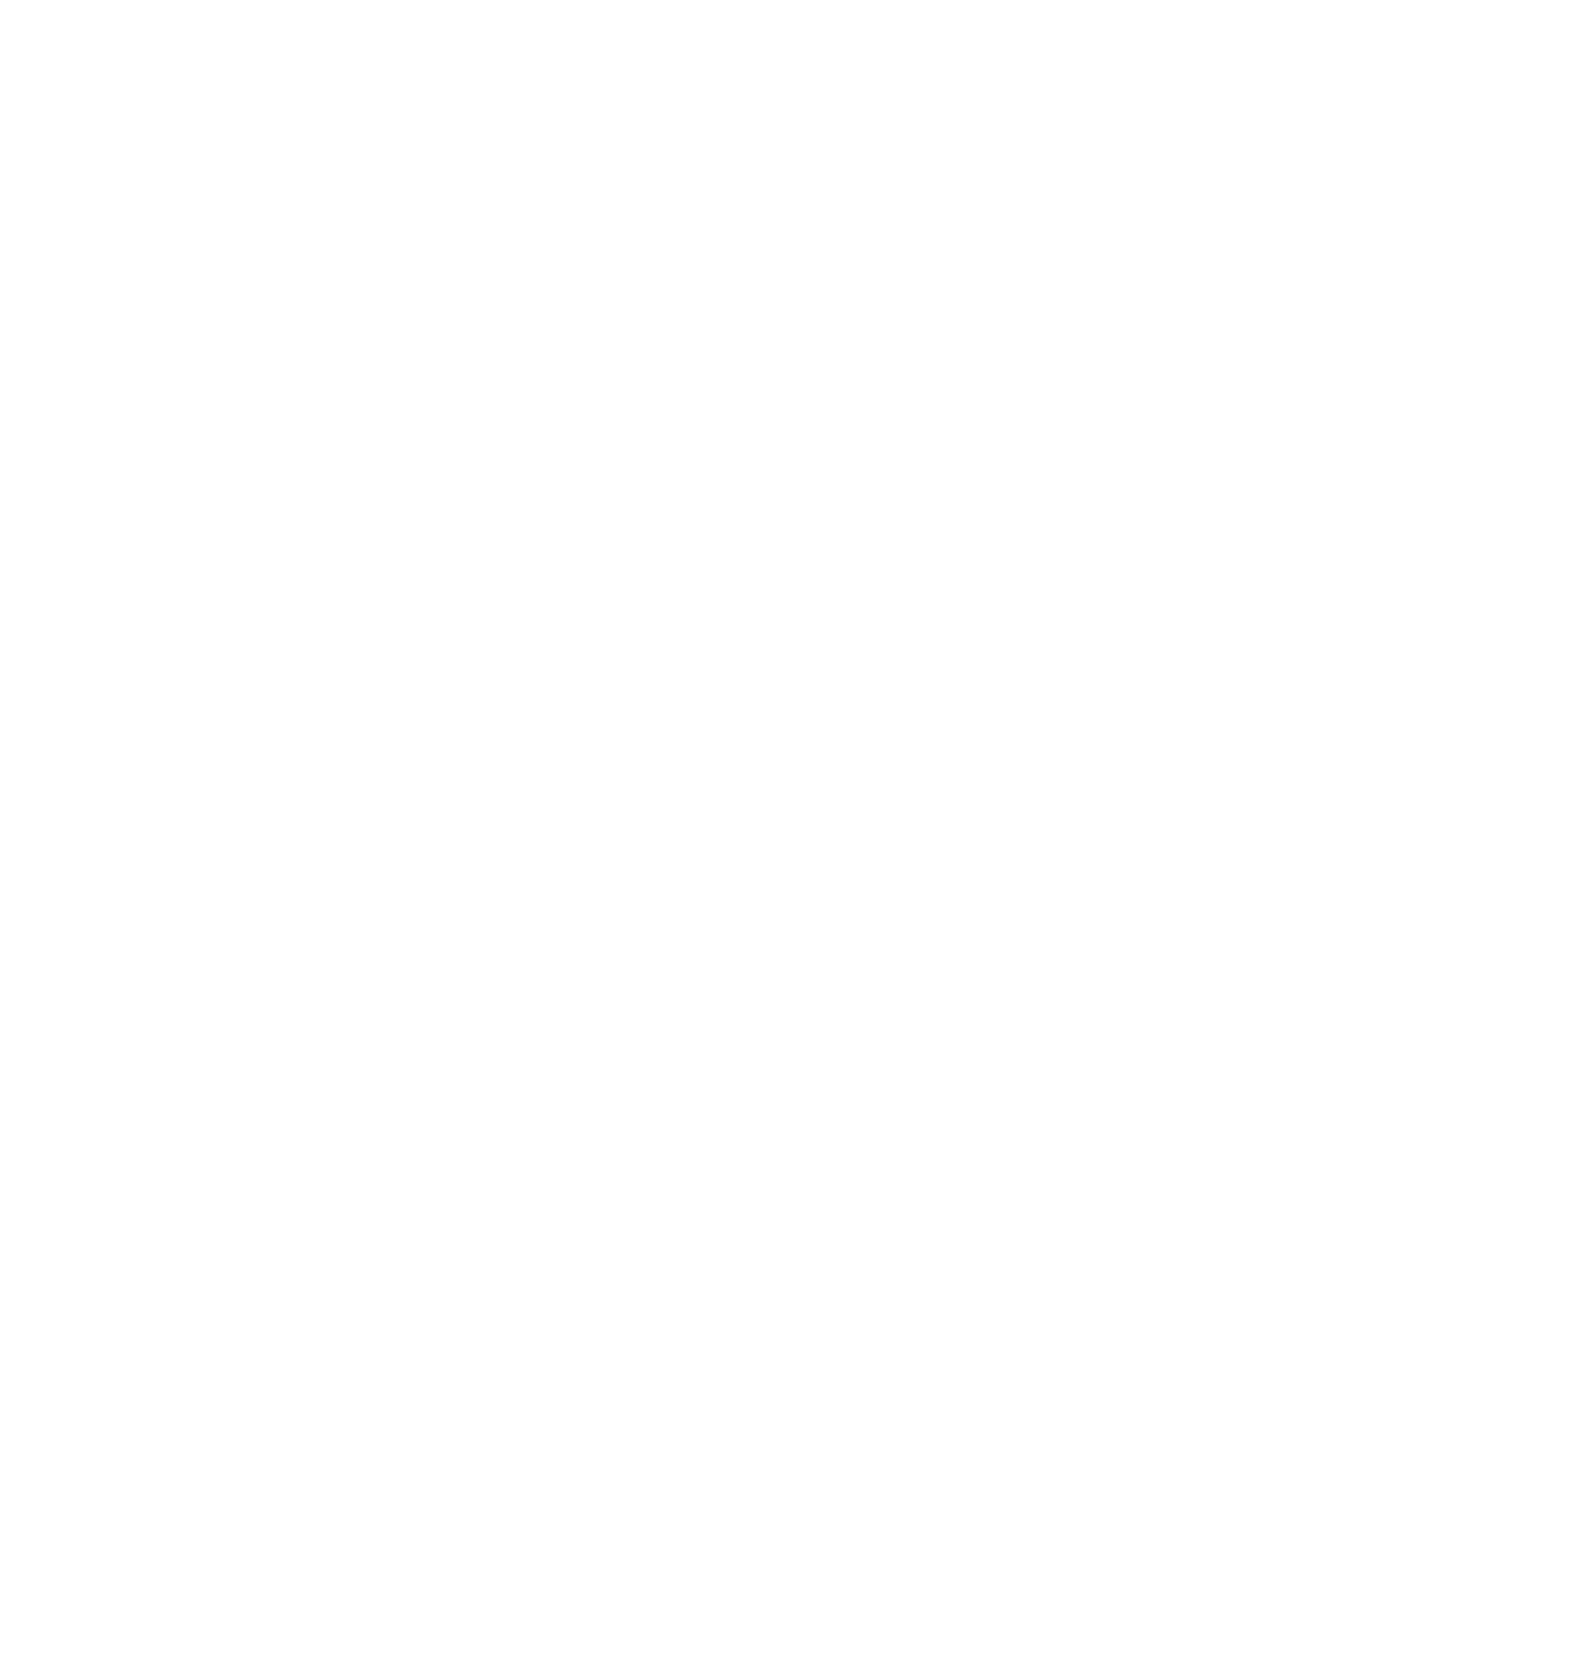 China Construction Bank logo pour fonds sombres (PNG transparent)